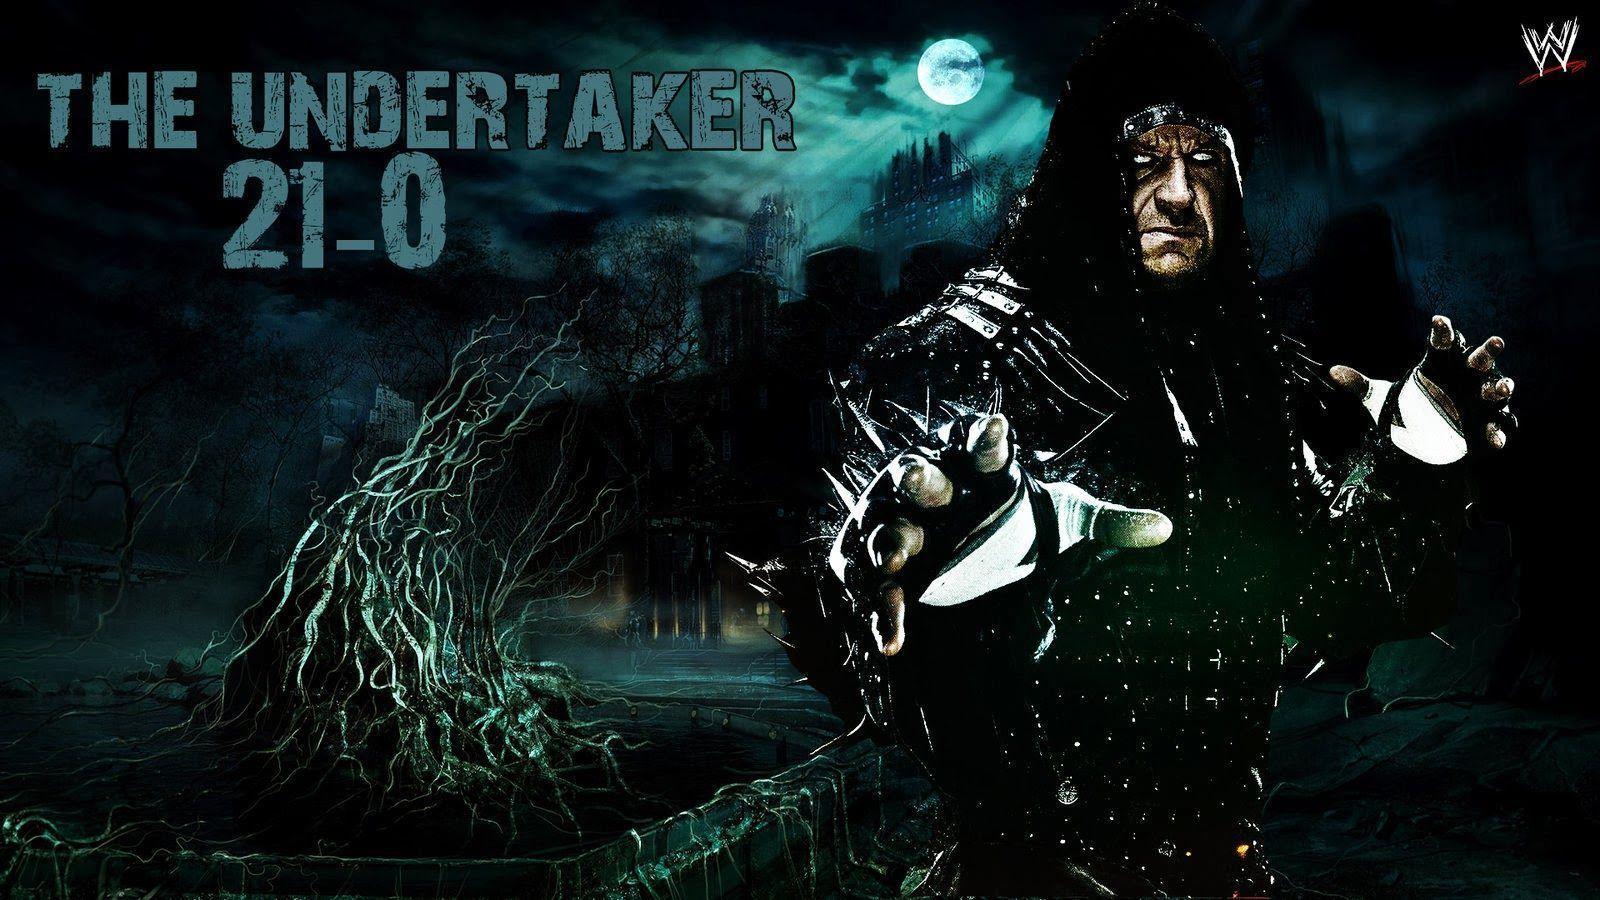 Wwe Undertaker 2014